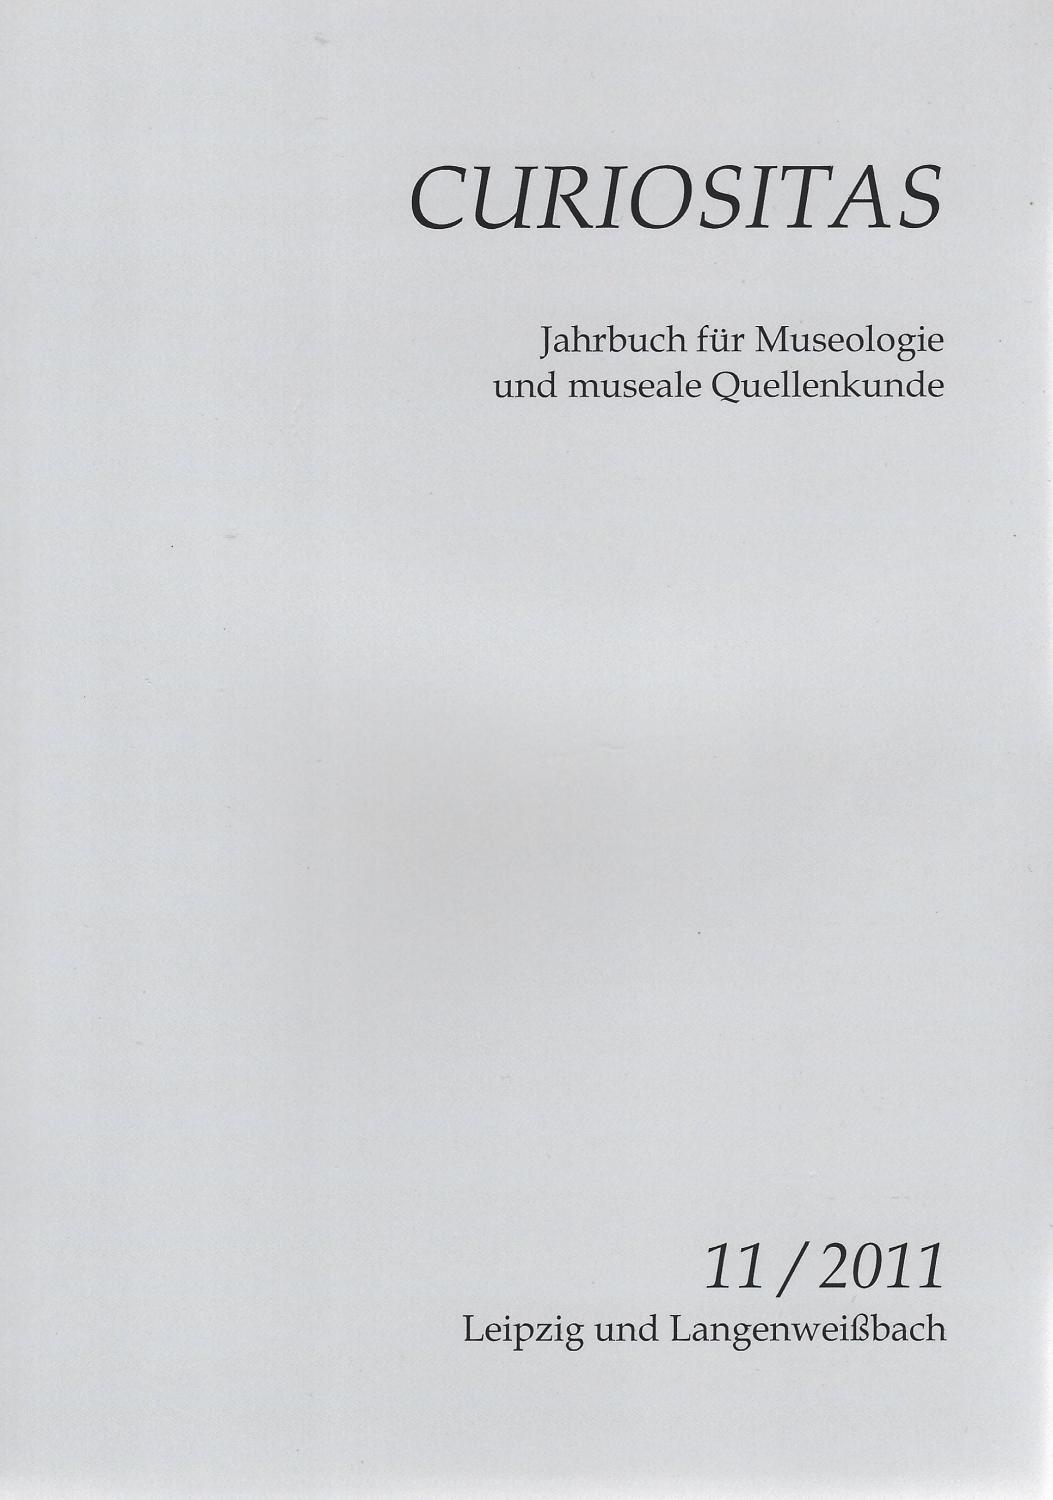 Curiositas Heft 11 (2011). Zeitschrift für Museologie und museale Quellenkunde - Volker Schimpff et al. -- Herausgegeben von Katharina Flügel und Volker Schimpff